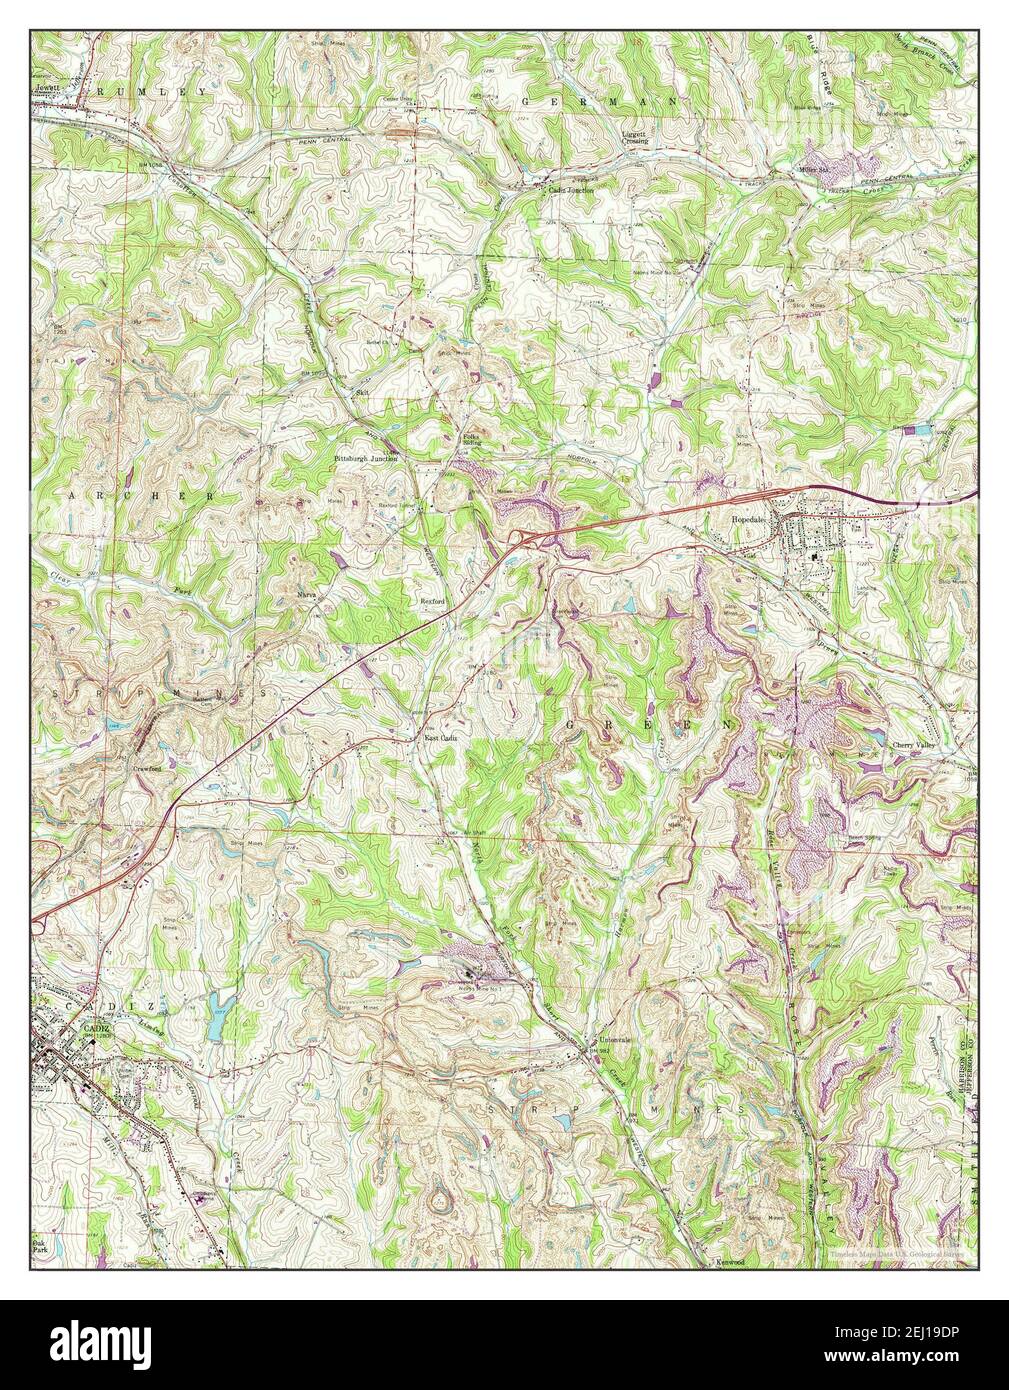 Cadiz Ohio Map 1960 1 24000 Estados Unidos De America Por Timeless Maps Data U S Geological Survey 2ej19dp 